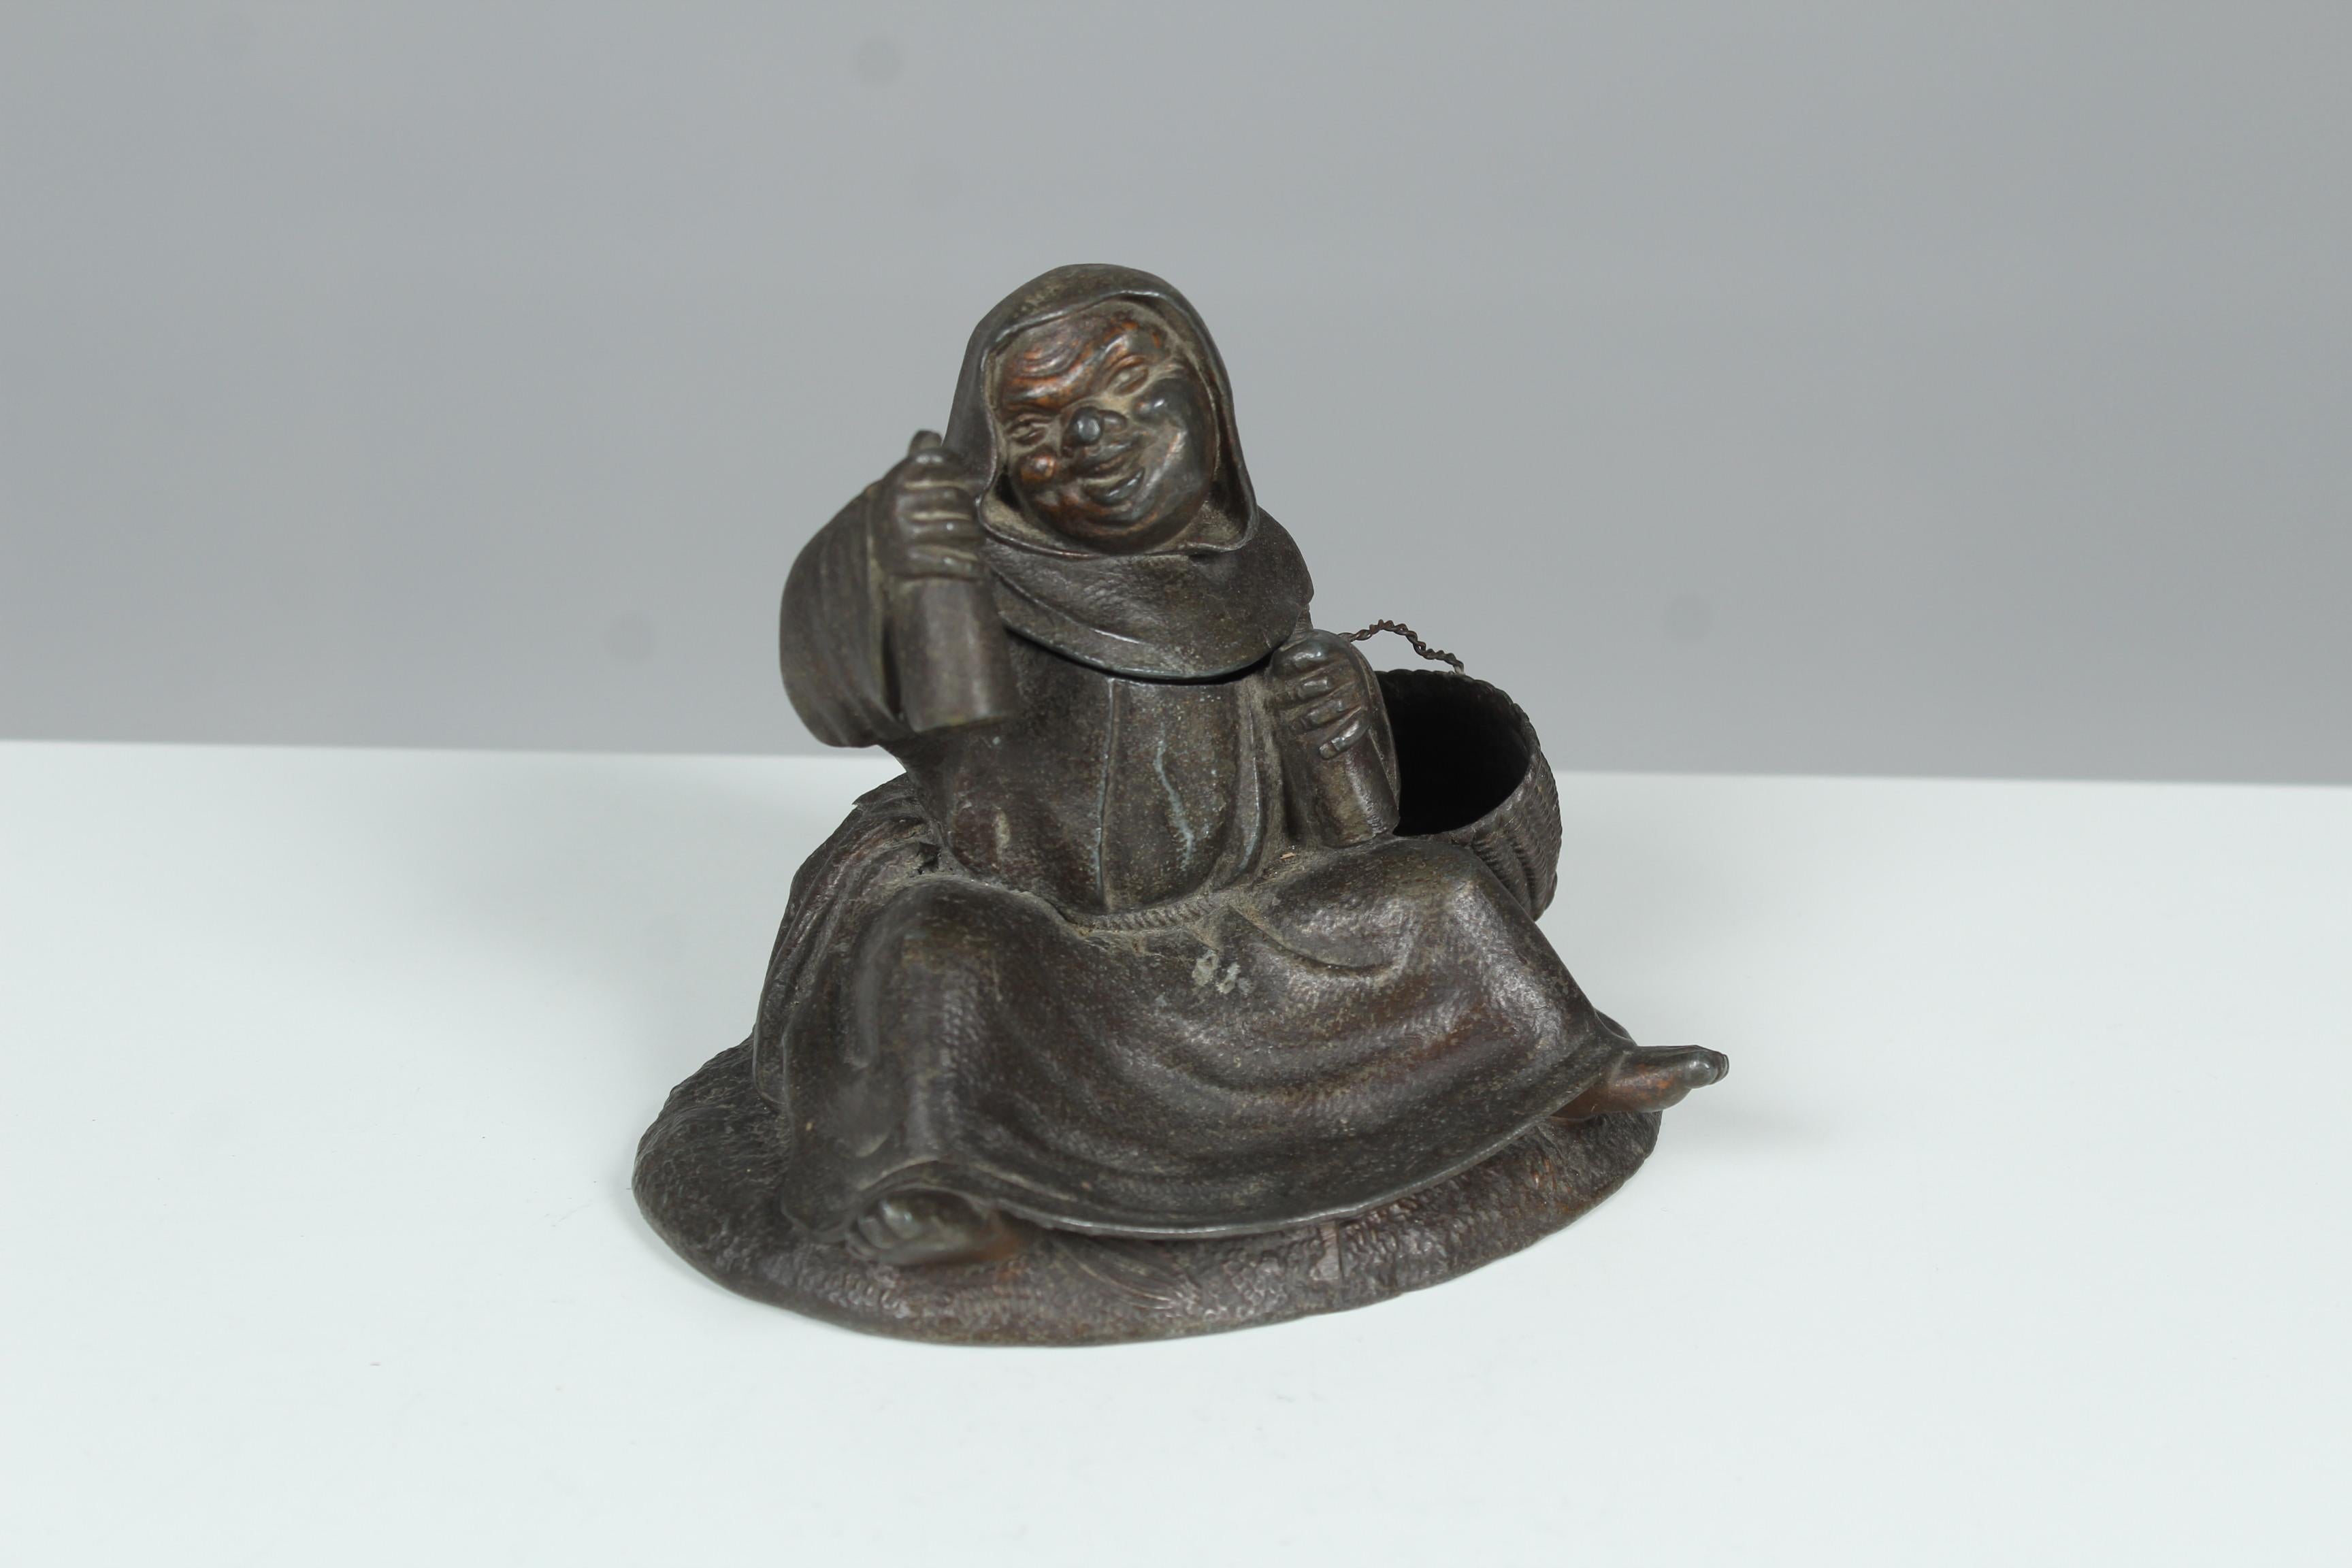 Rare sculpture d'un moine joyeux avec un compartiment secret.
Un pyrogène, qui était utilisé pour les ustensiles de fumage, tels que les allumettes.
Le moine tient deux bouteilles dans ses mains et lève un bras, prêt à porter un toast à la